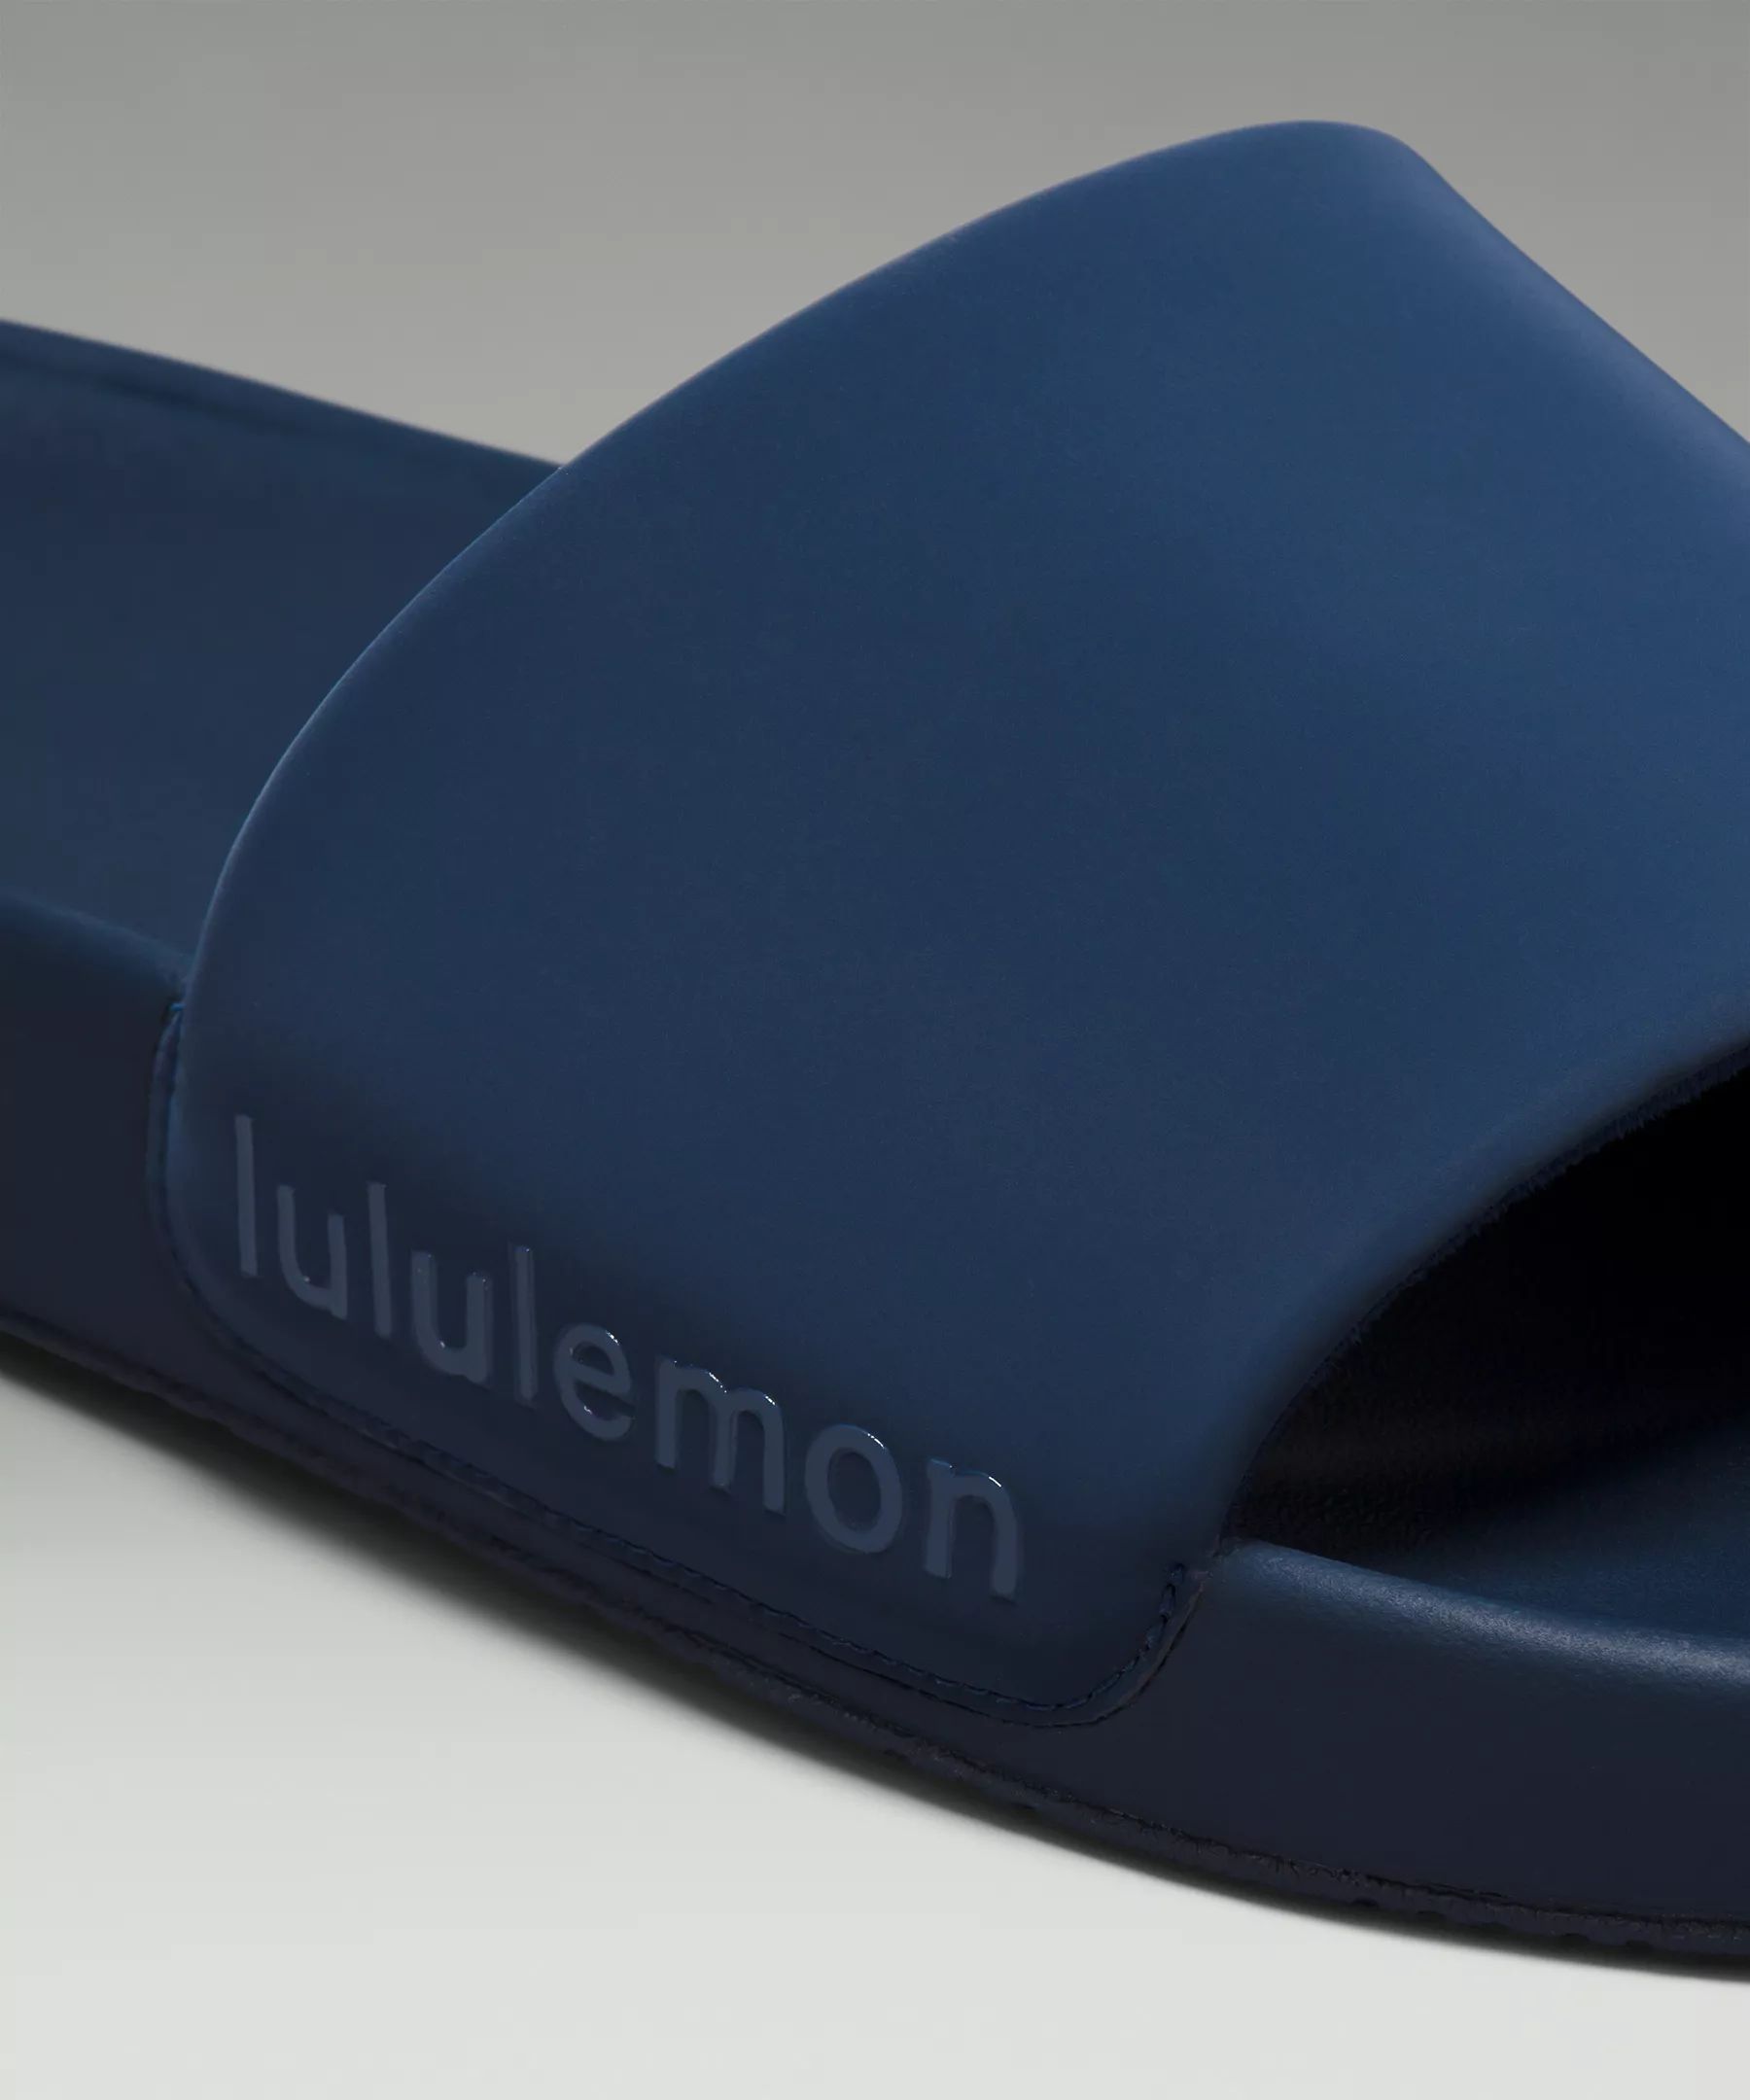 Restfeel Men's Slide | Men's Sandals | lululemon | Lululemon (US)